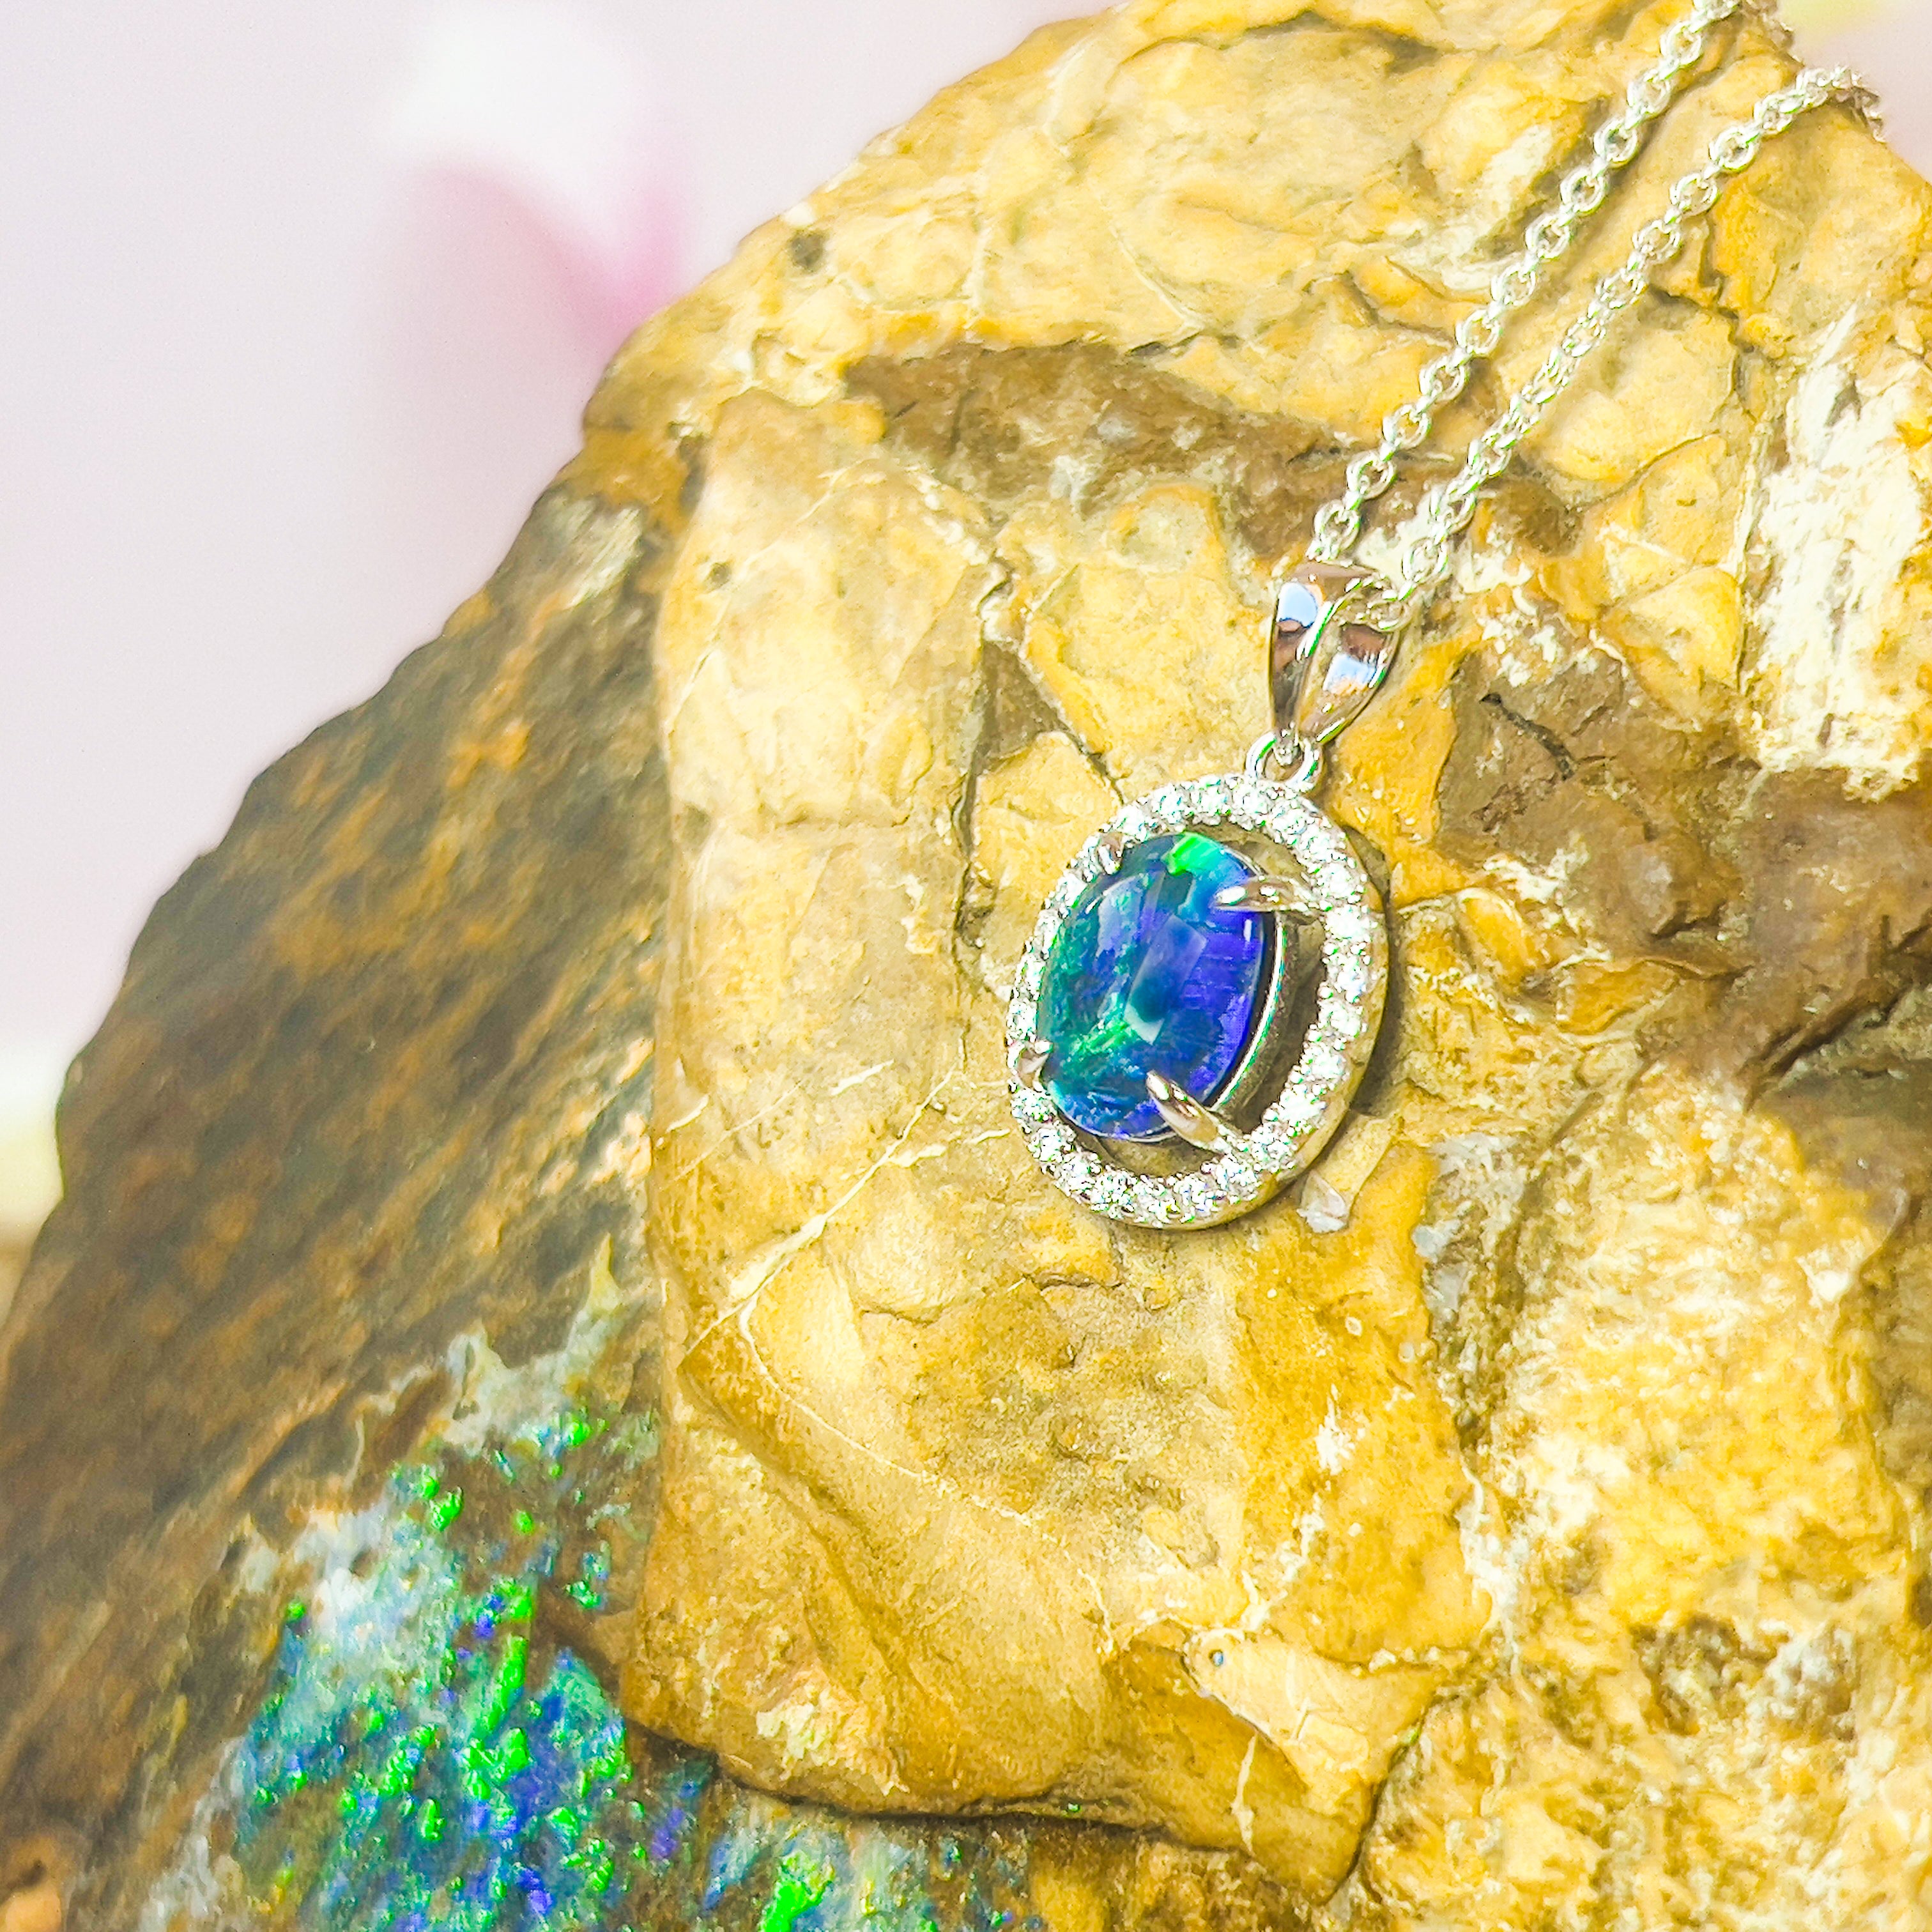 Sterling Silver Opal Triplet Halo Pendant - Dainty Opal Necklace, Gold & Silver, Fire Opal, Raw Style 9x7mm - Masterpiece Jewellery Opal & Gems Sydney Australia | Online Shop